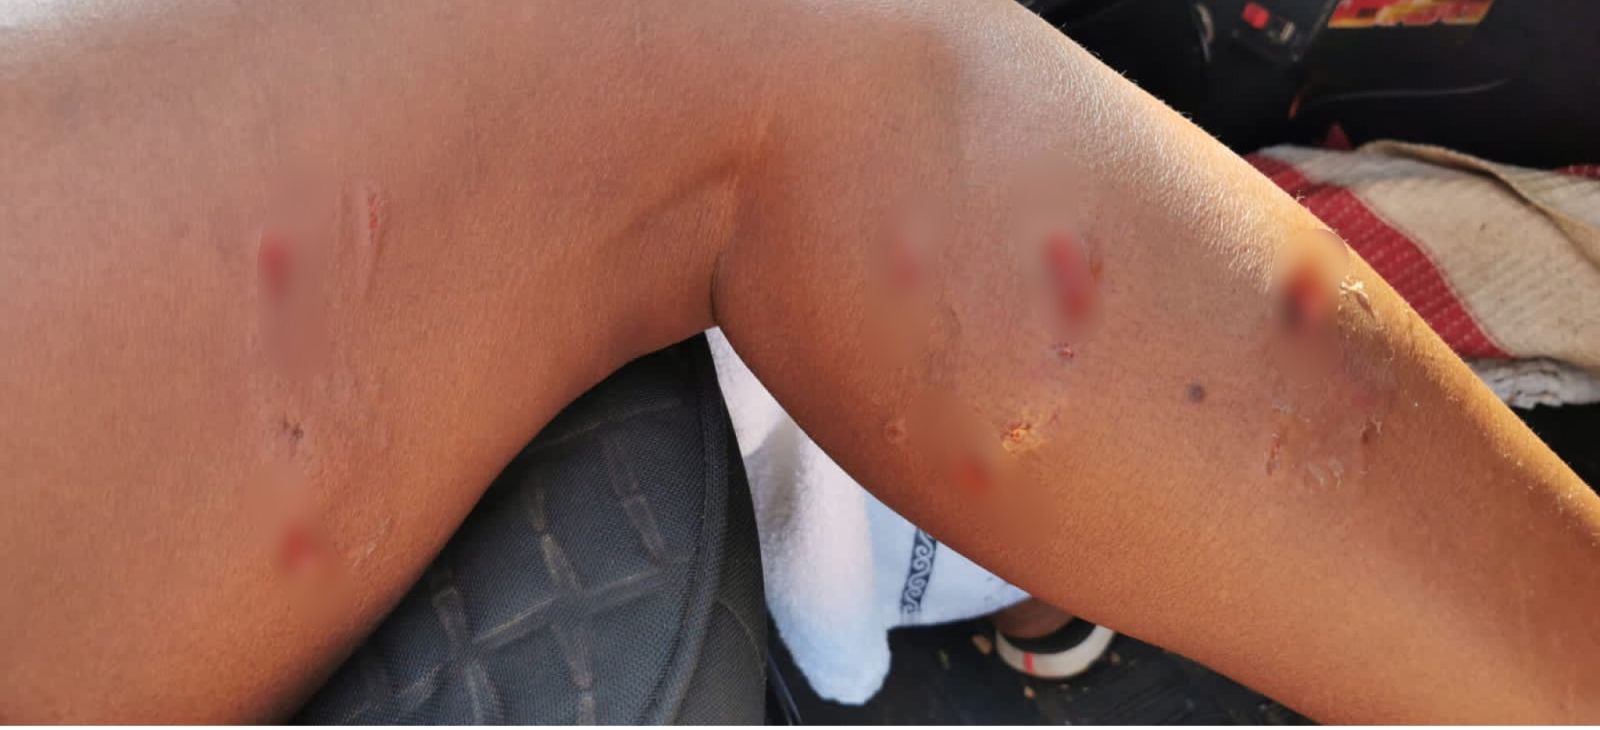 Moradora foi atacada e ficou com diversas mordidas pela perna 